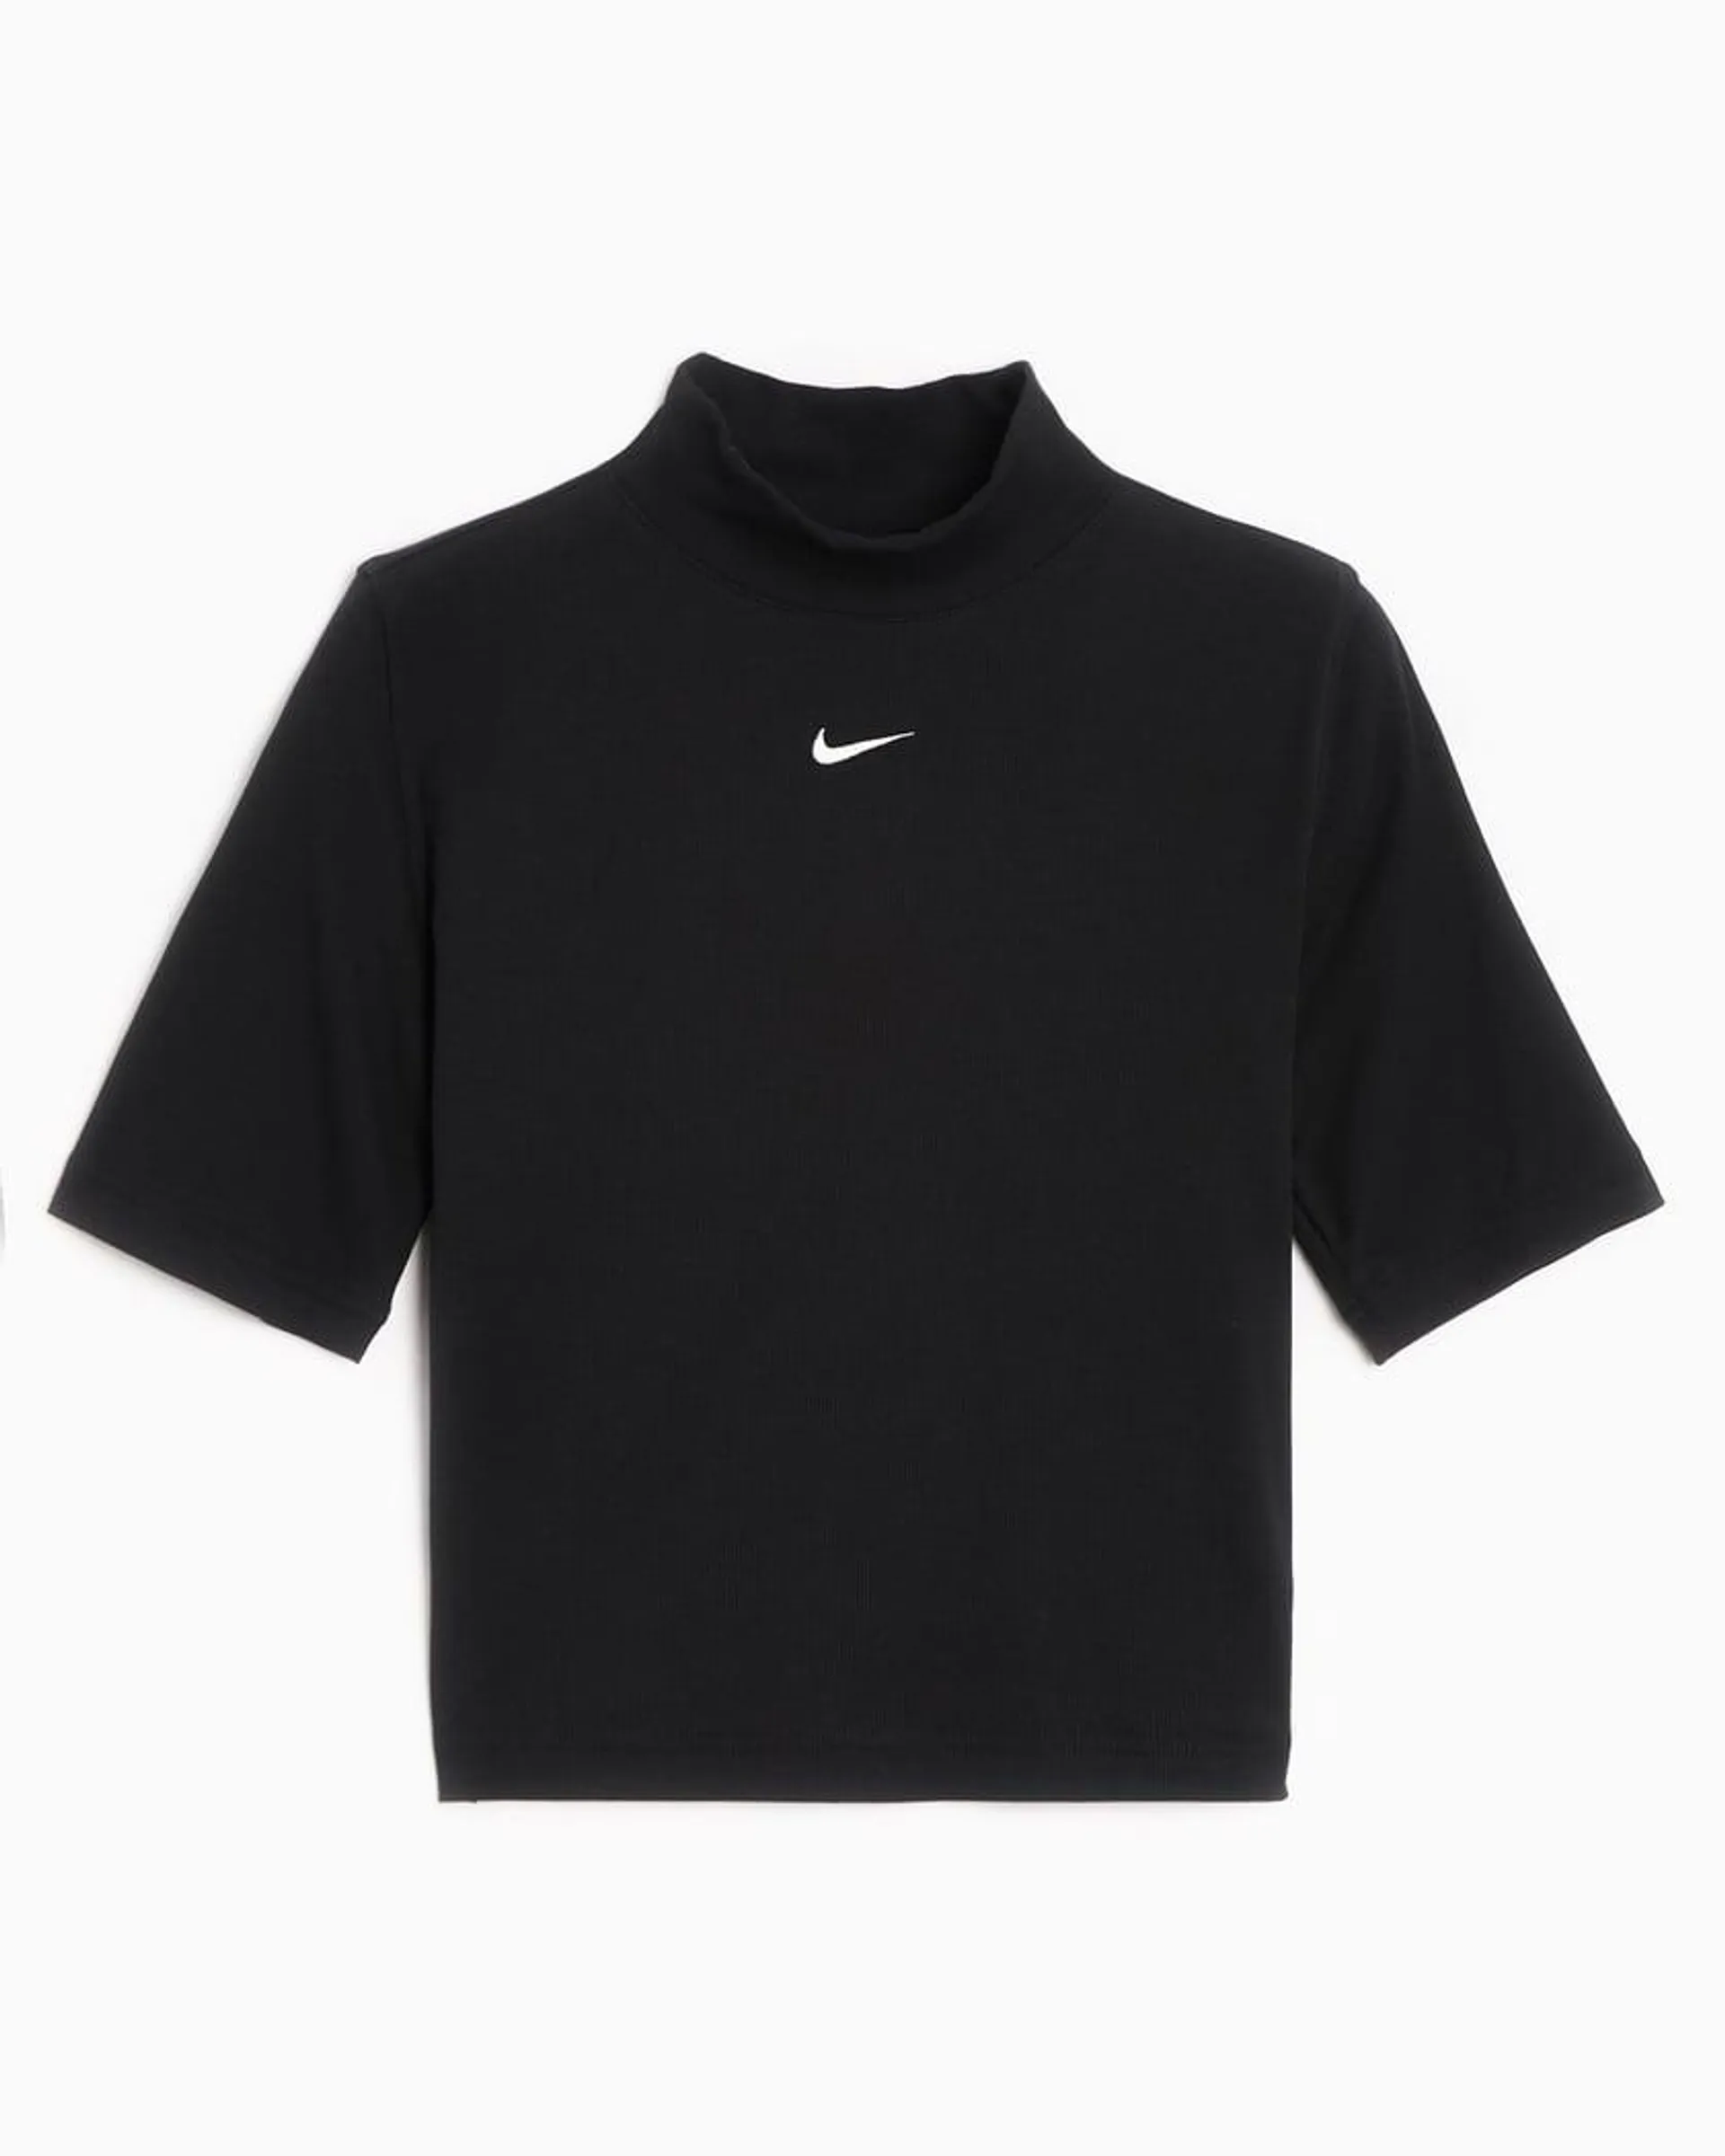 Nike Sportswear Essentials Women's Rib Mock Neck T-Shirt